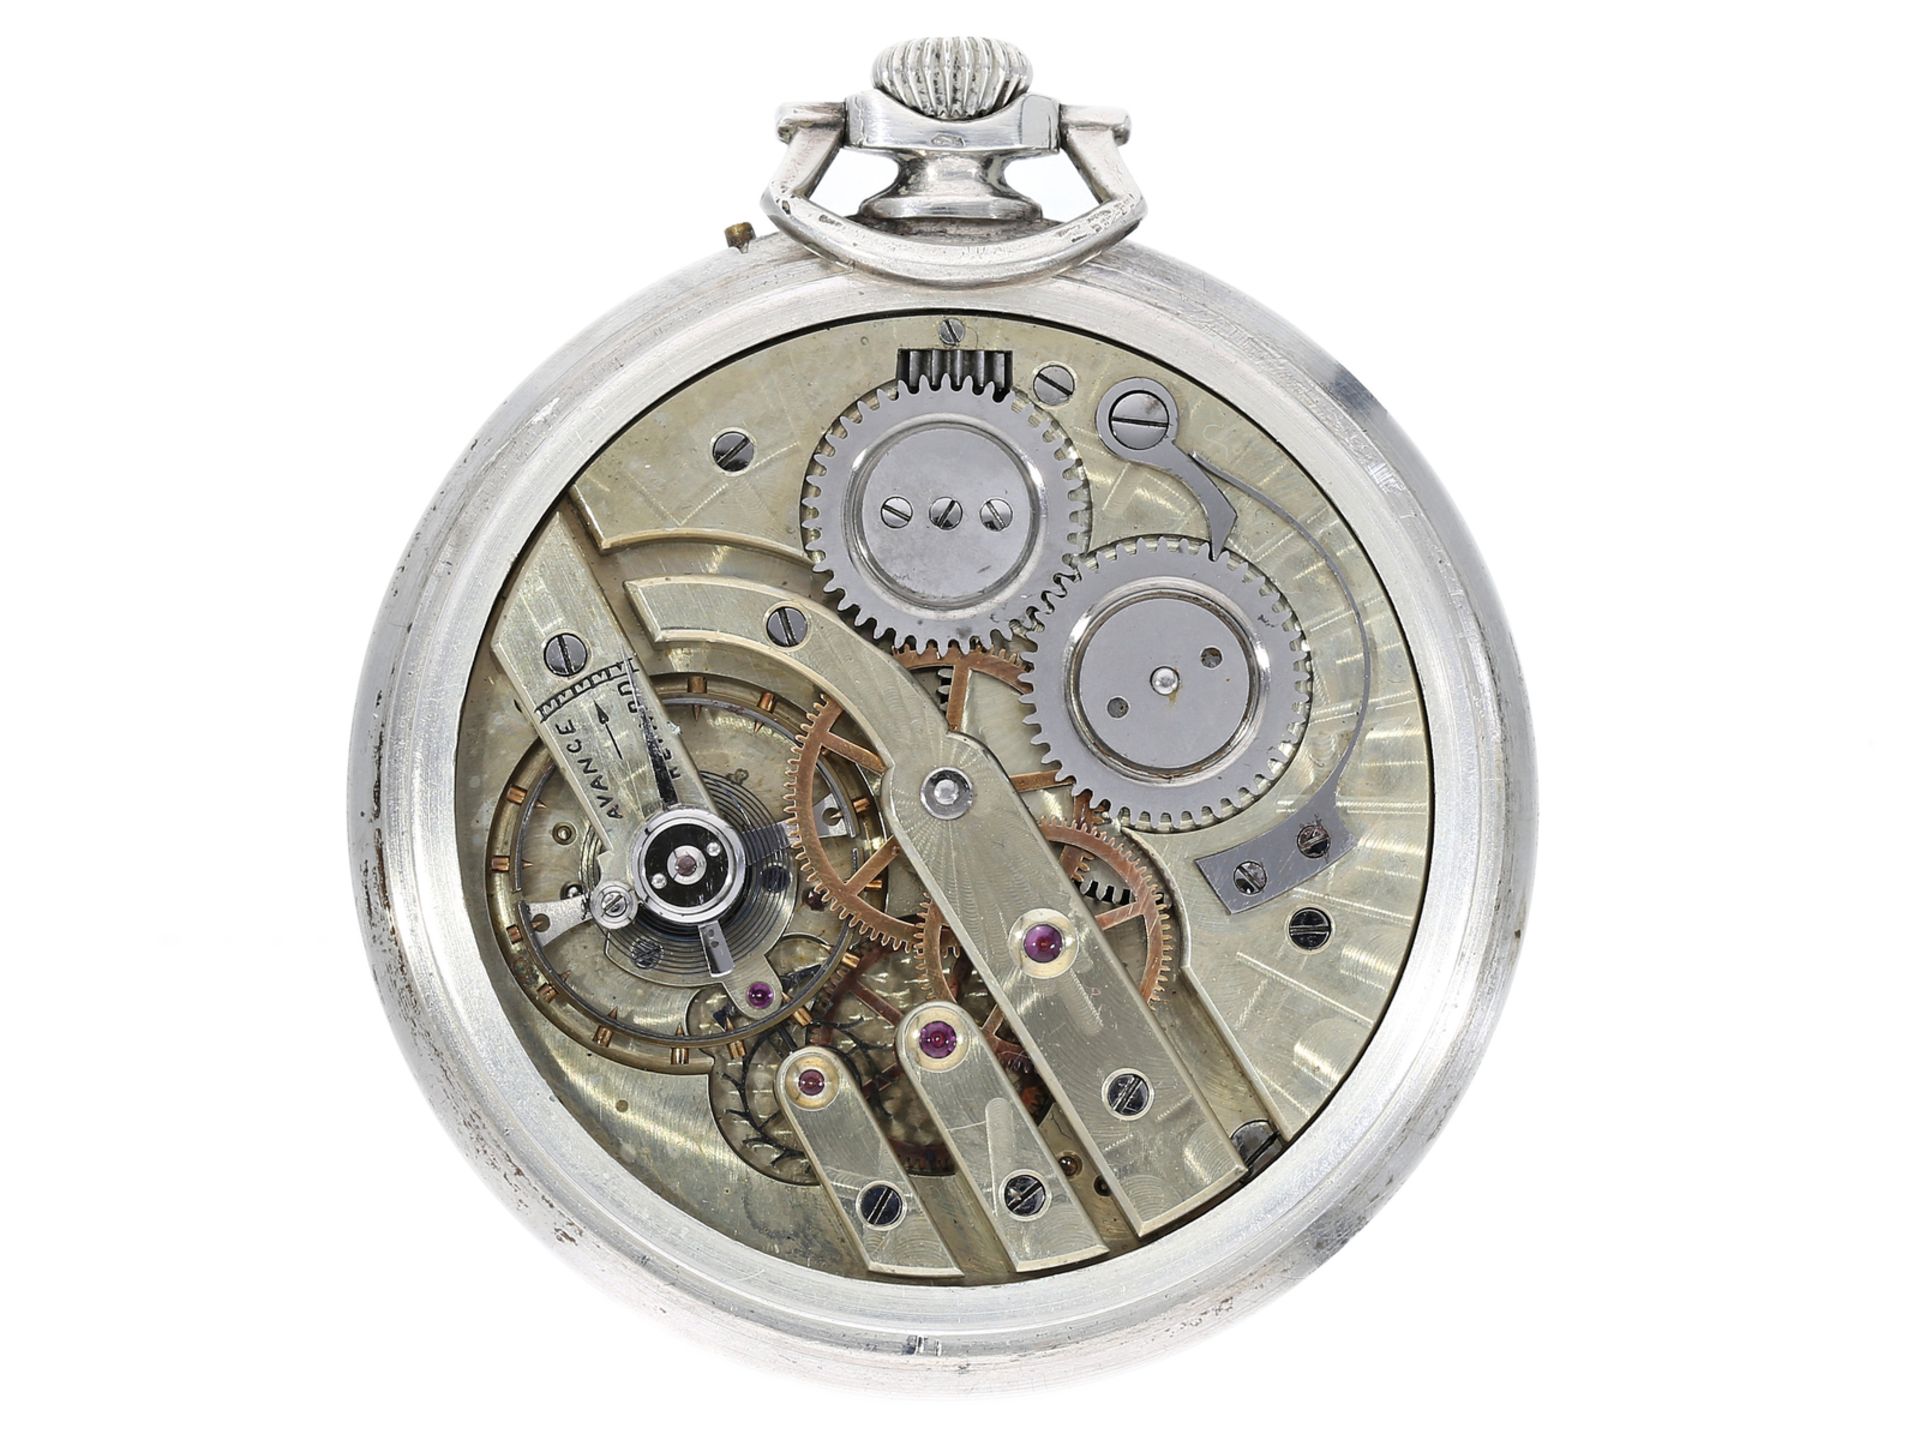 Taschenuhr: elegante Art déco Frackuhr mit Chronometer-Kaliber, Oris Watch Co., ca. 1930 - Bild 3 aus 3